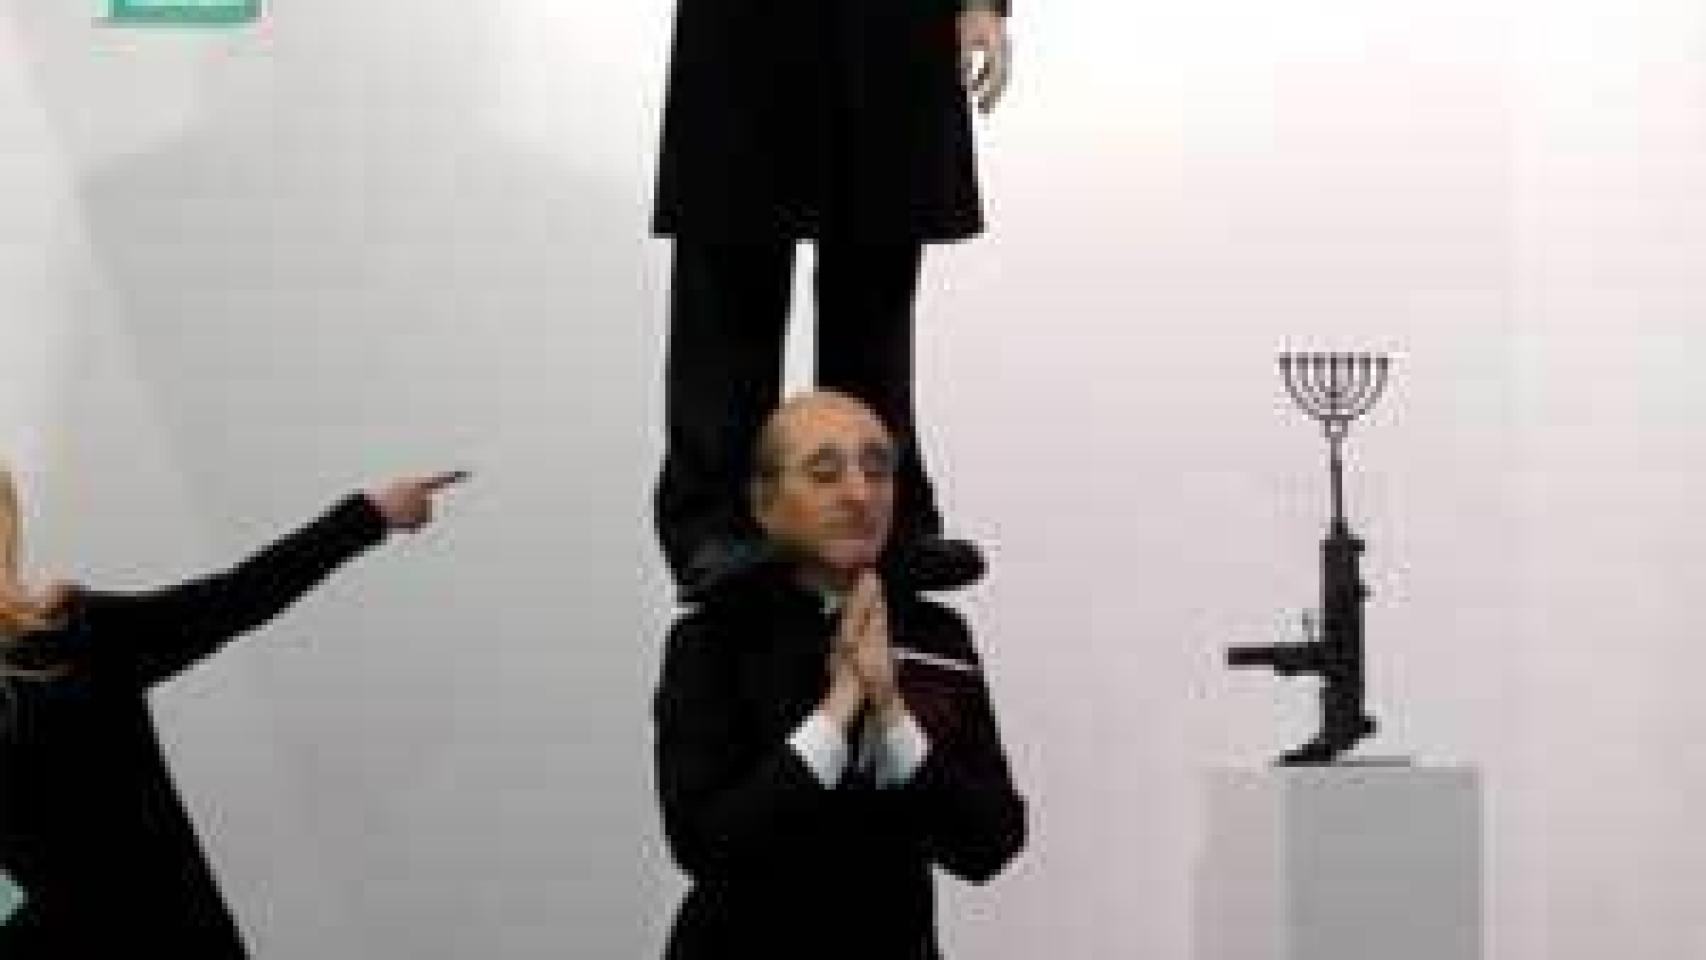 Image: El peso de Israel cae sobre Eugenio Merino en Arco